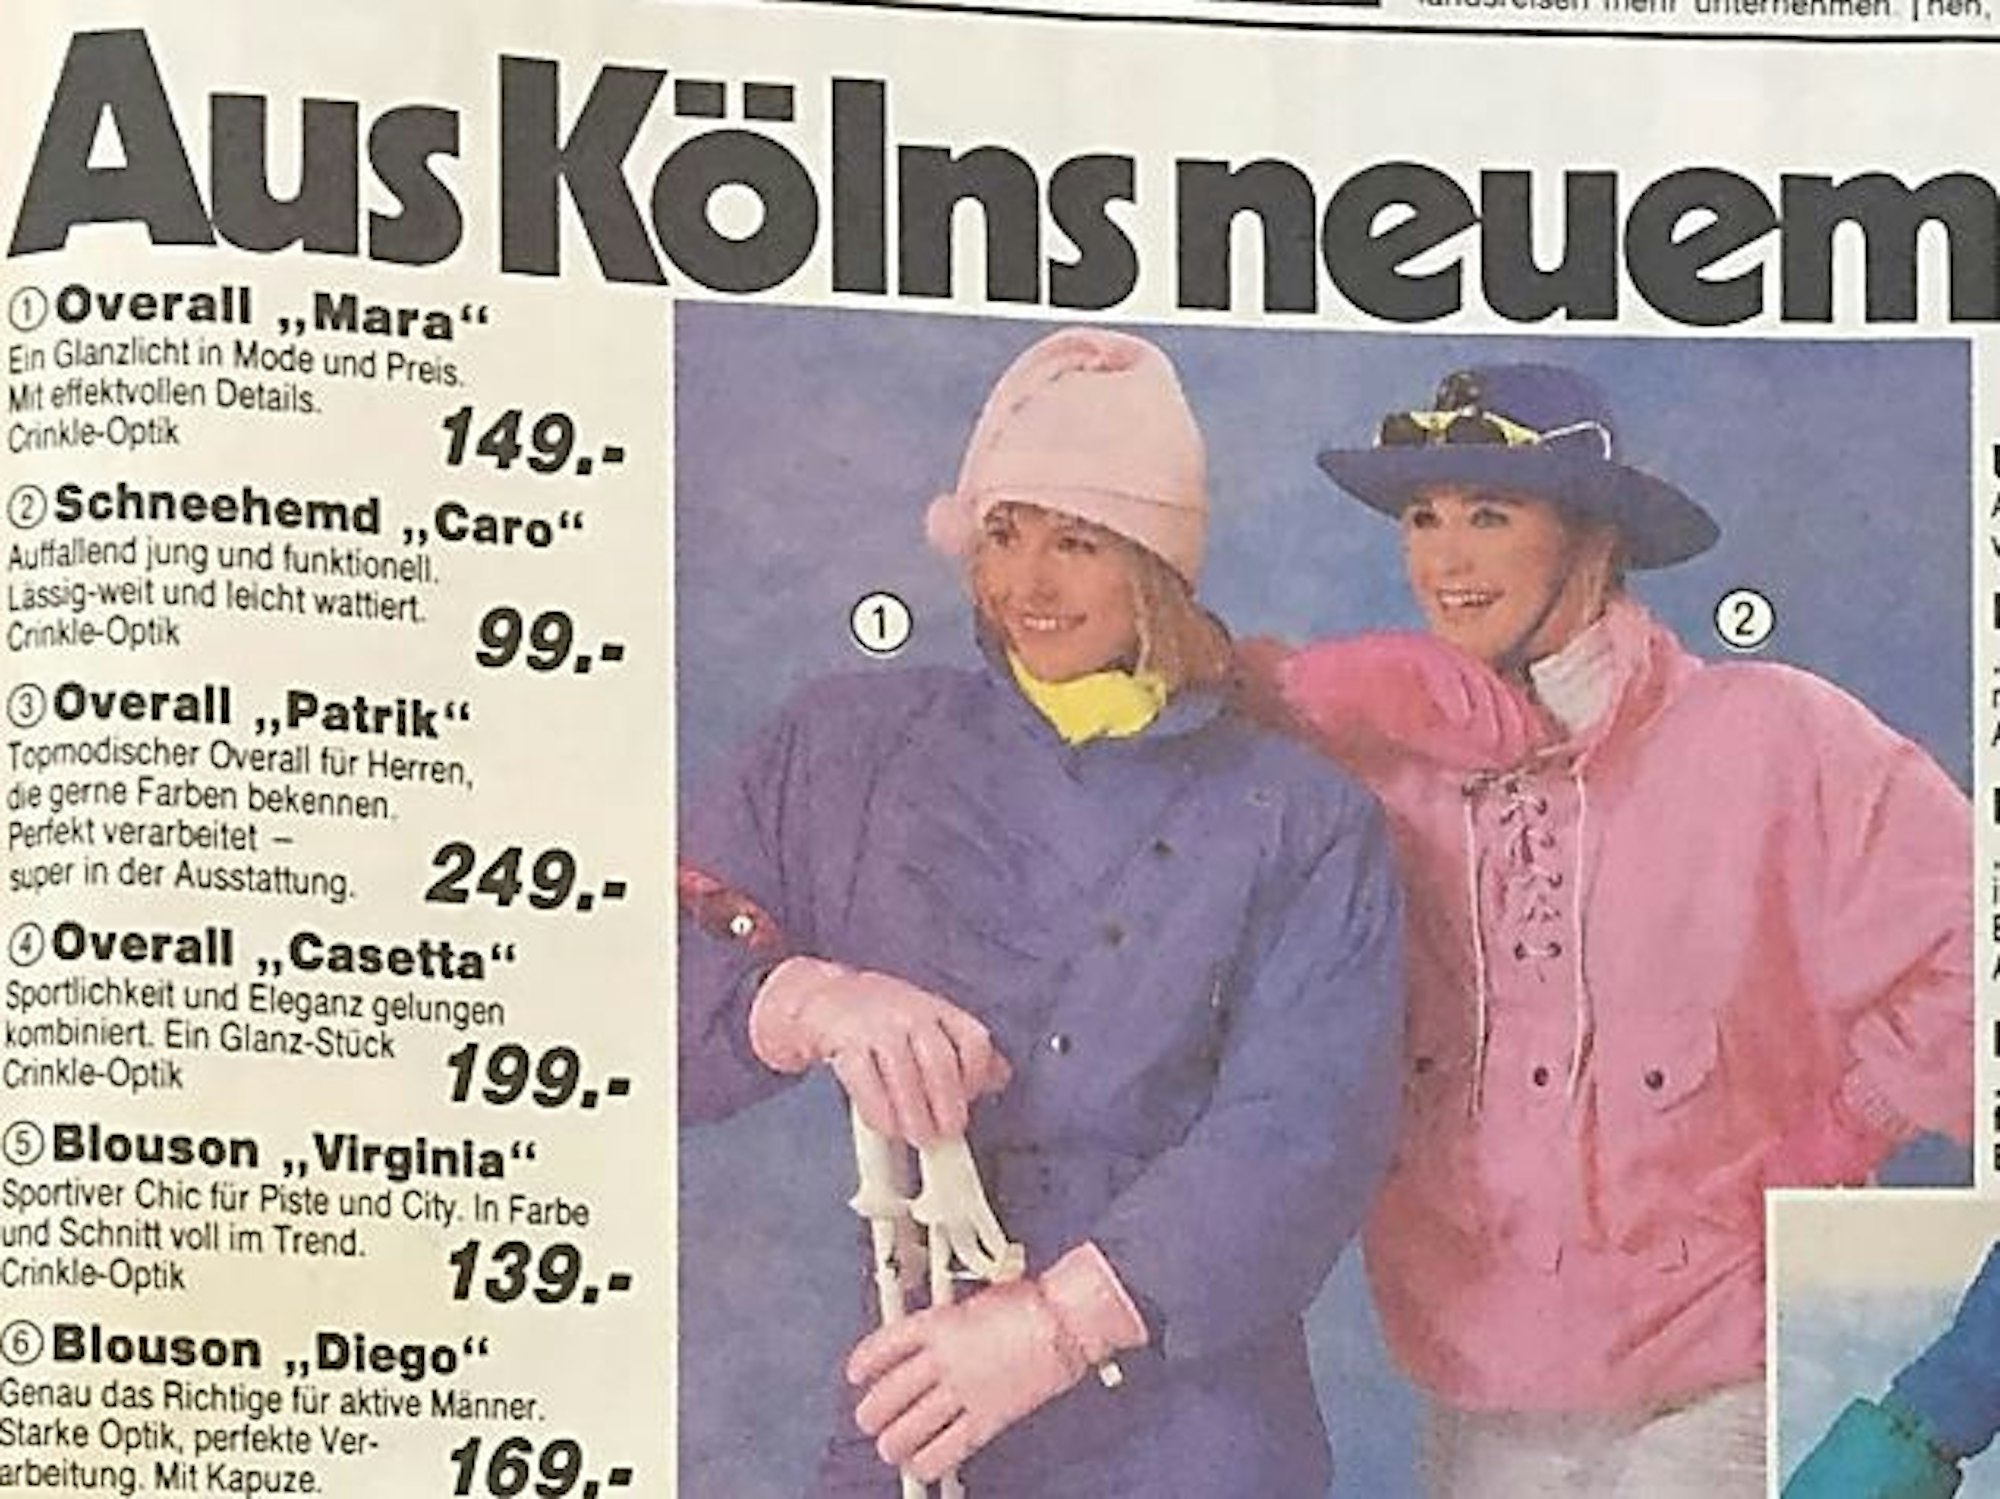 Das Foto zeigt Ski-Werbung von 1986.